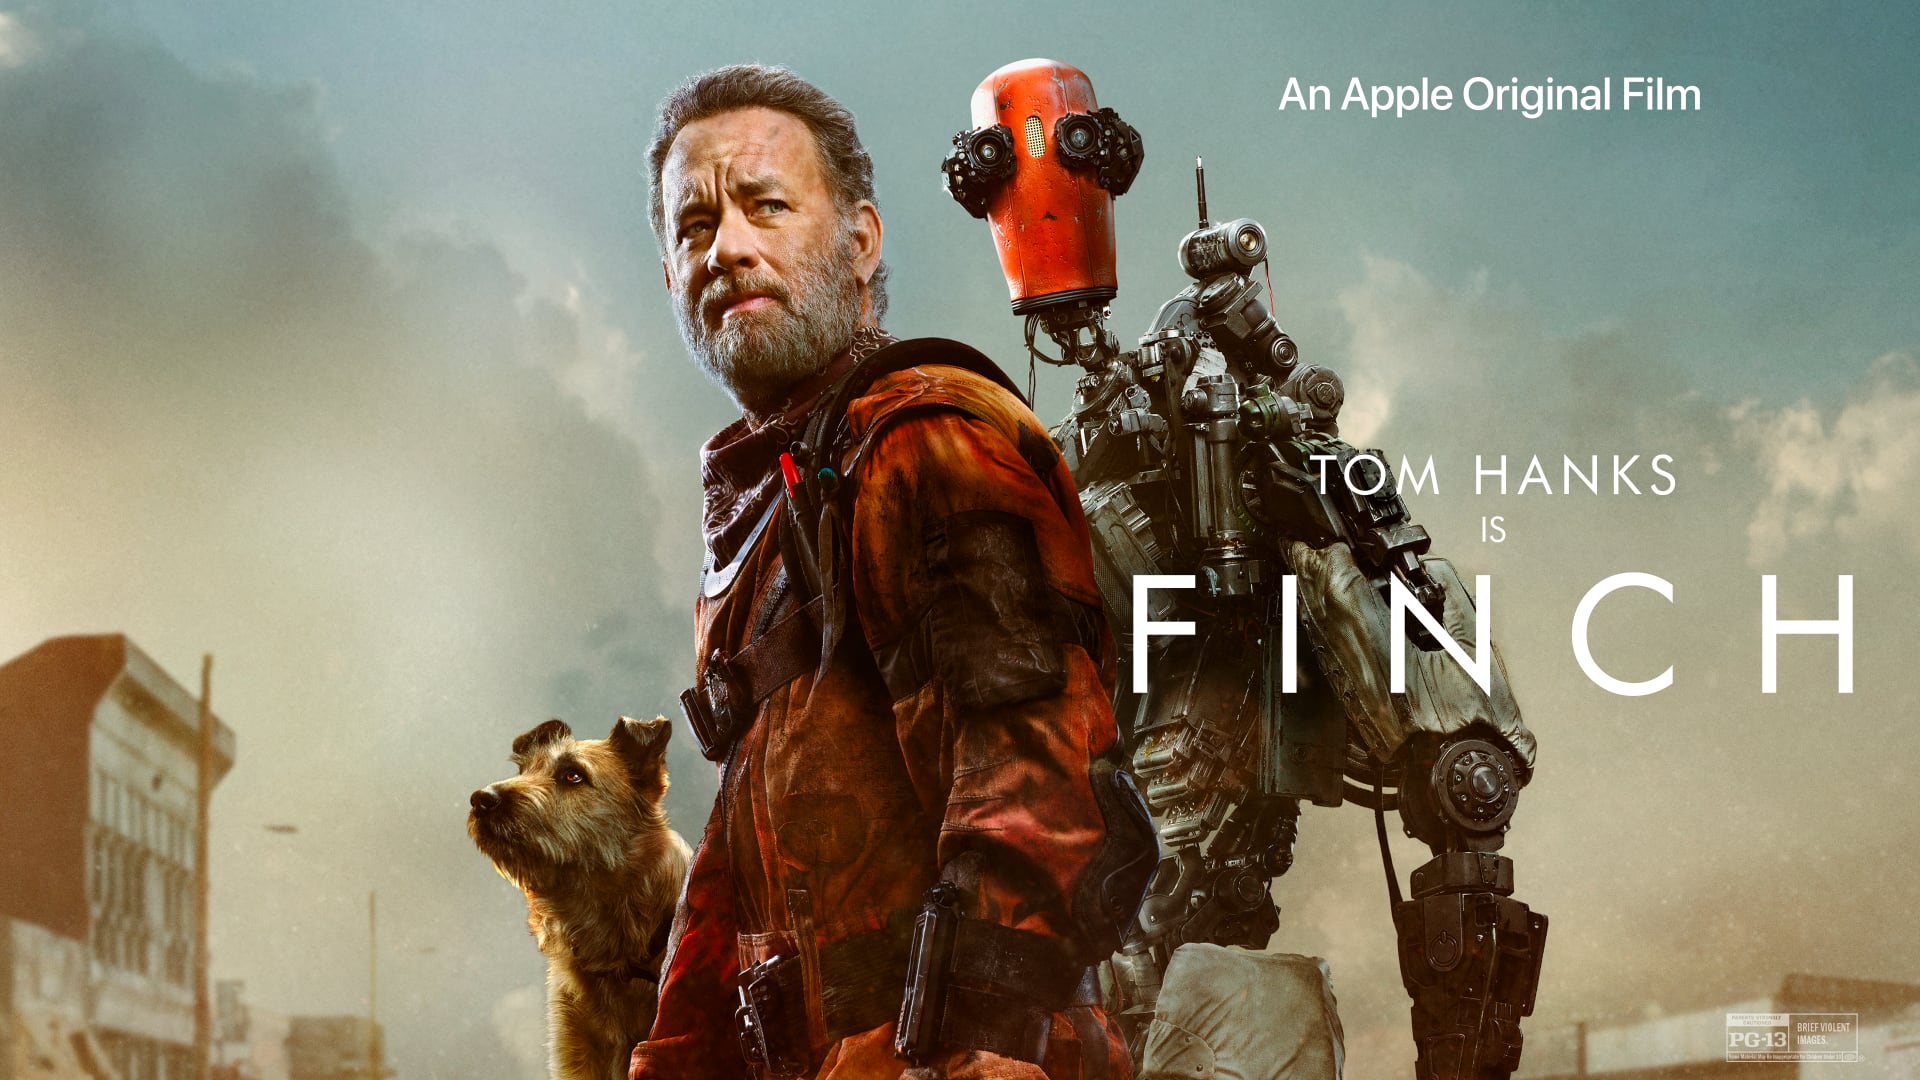 Poster artwork for the Apple TV+ sci-fi drama "Finch" starring Tom Hanks